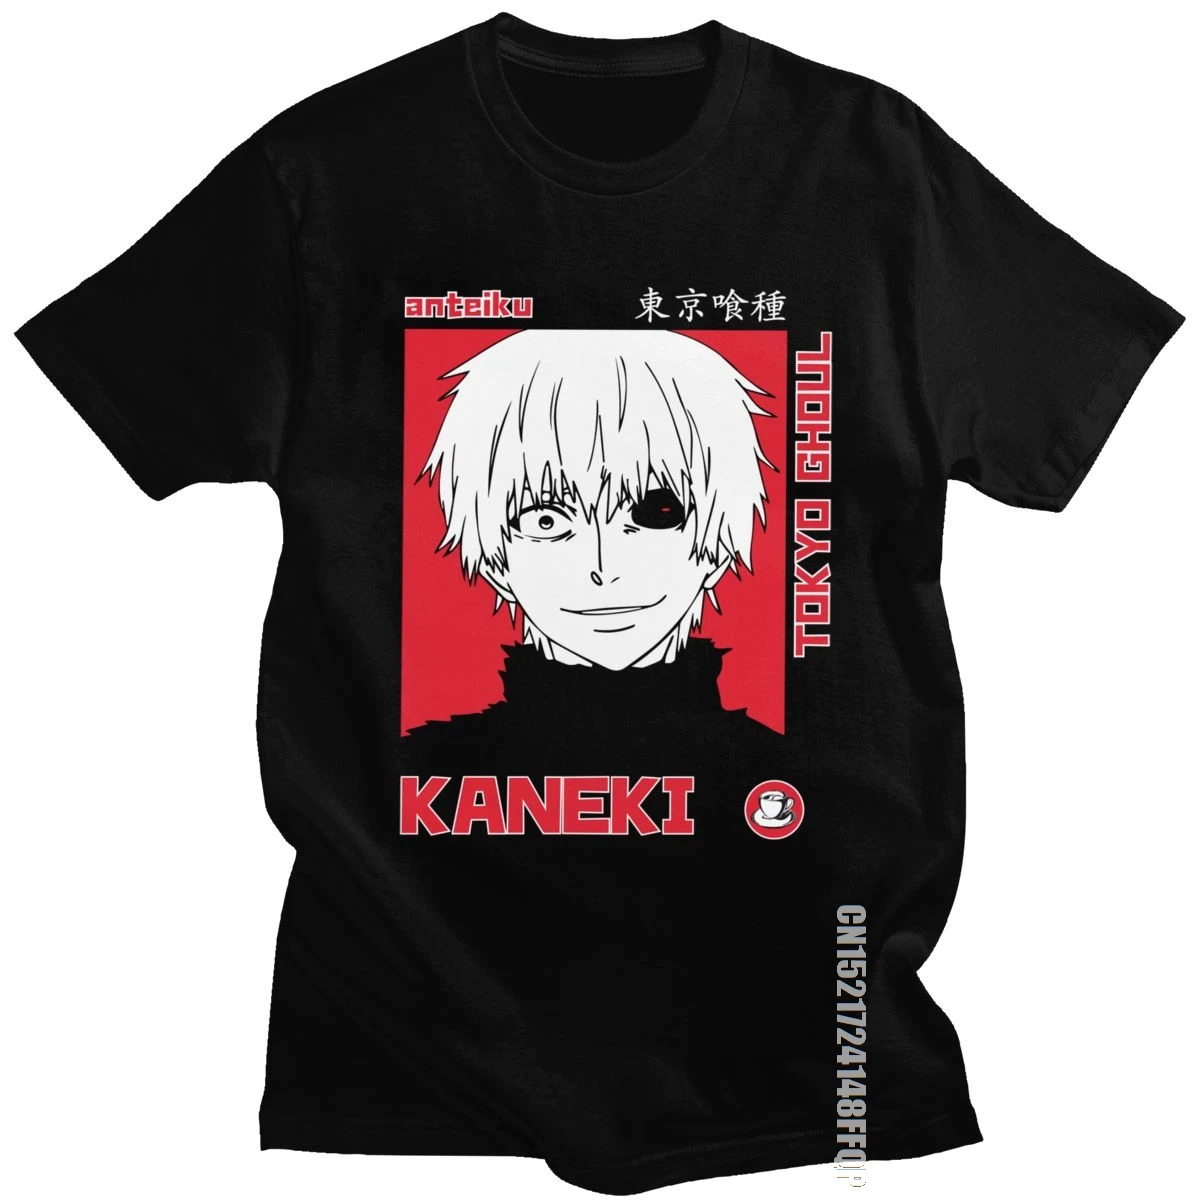 Japanese Anime Tokyo Ghoul T Shirt Men 100% Cotton Fashion T-shirt Crew Neck Kaneki Ken Tee Manga Tshirt Fans Apparel Designer